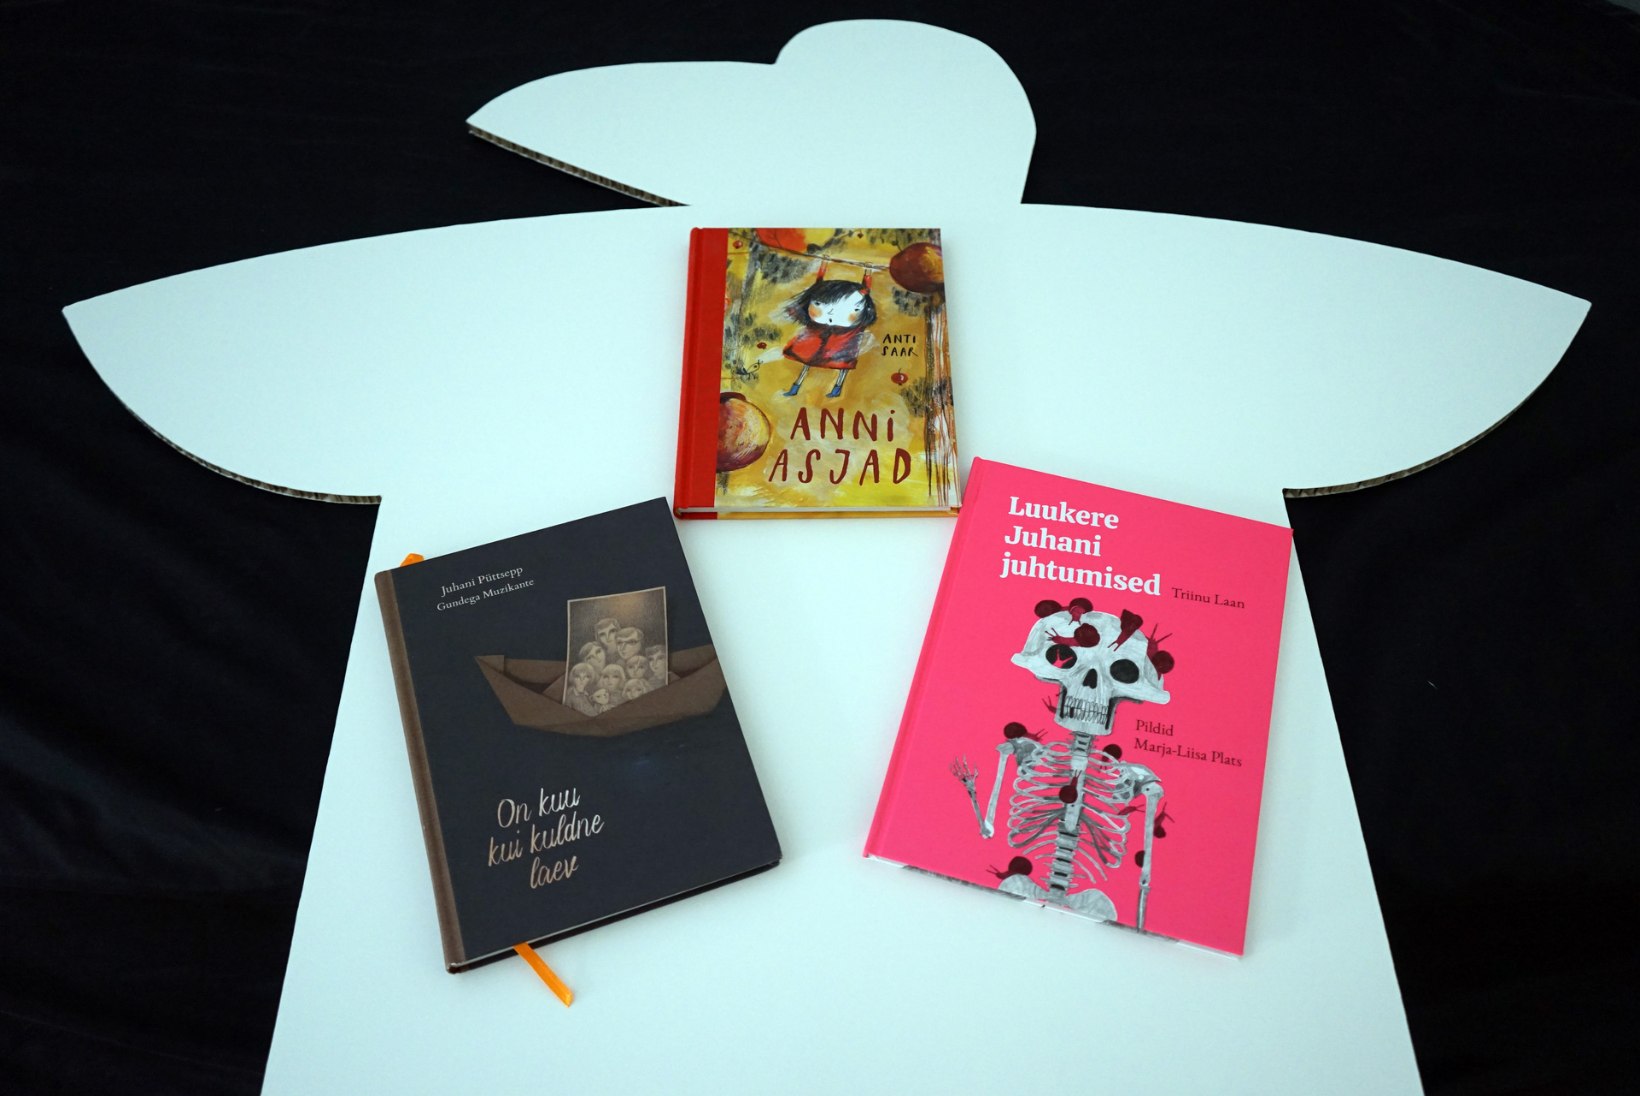 Eesti lasteraamatud pälvisid rahvusvahelise tunnustuse